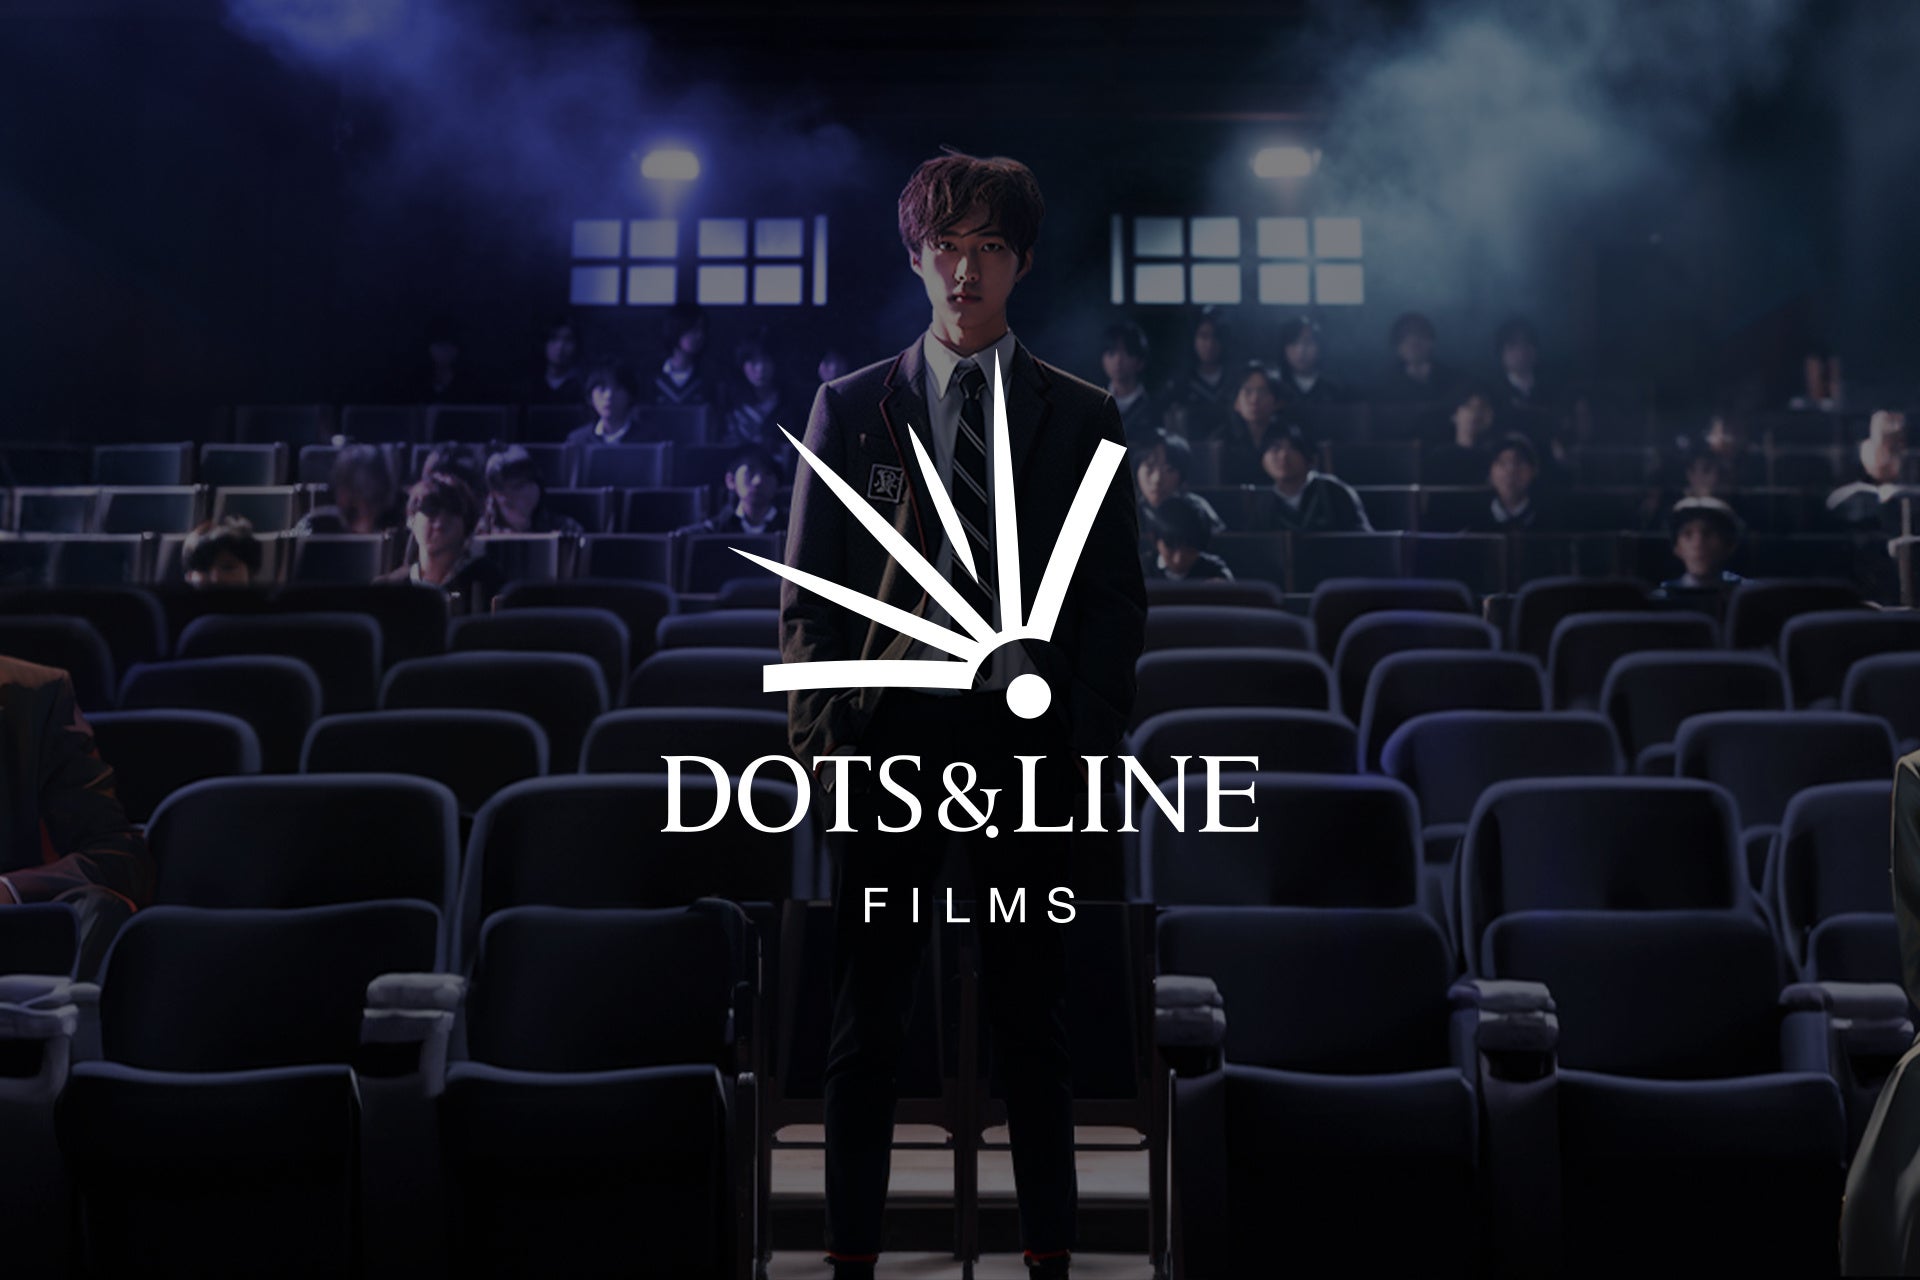 「DOTS&LINE FILMS」初のオリジナル映画企画。主演を含めたオープン・オーディションを開催